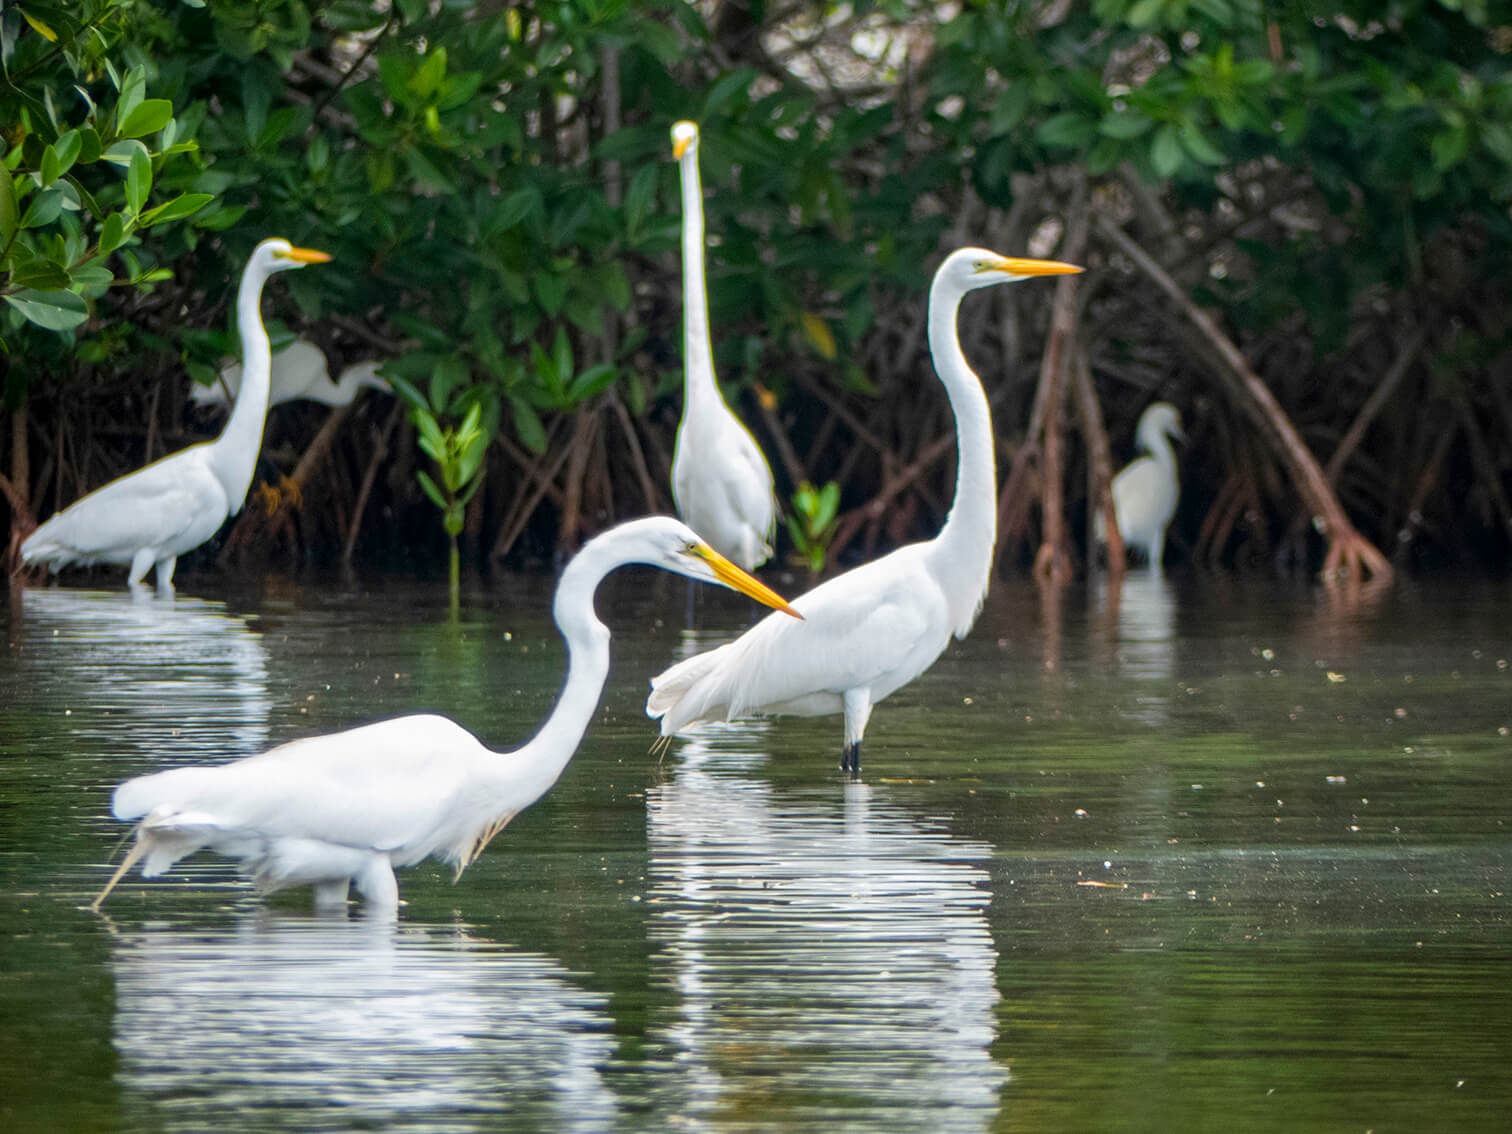 En medio de un manglar, siete garzas reales están en el agua. Esperan peces para sacarlos con sus picos.